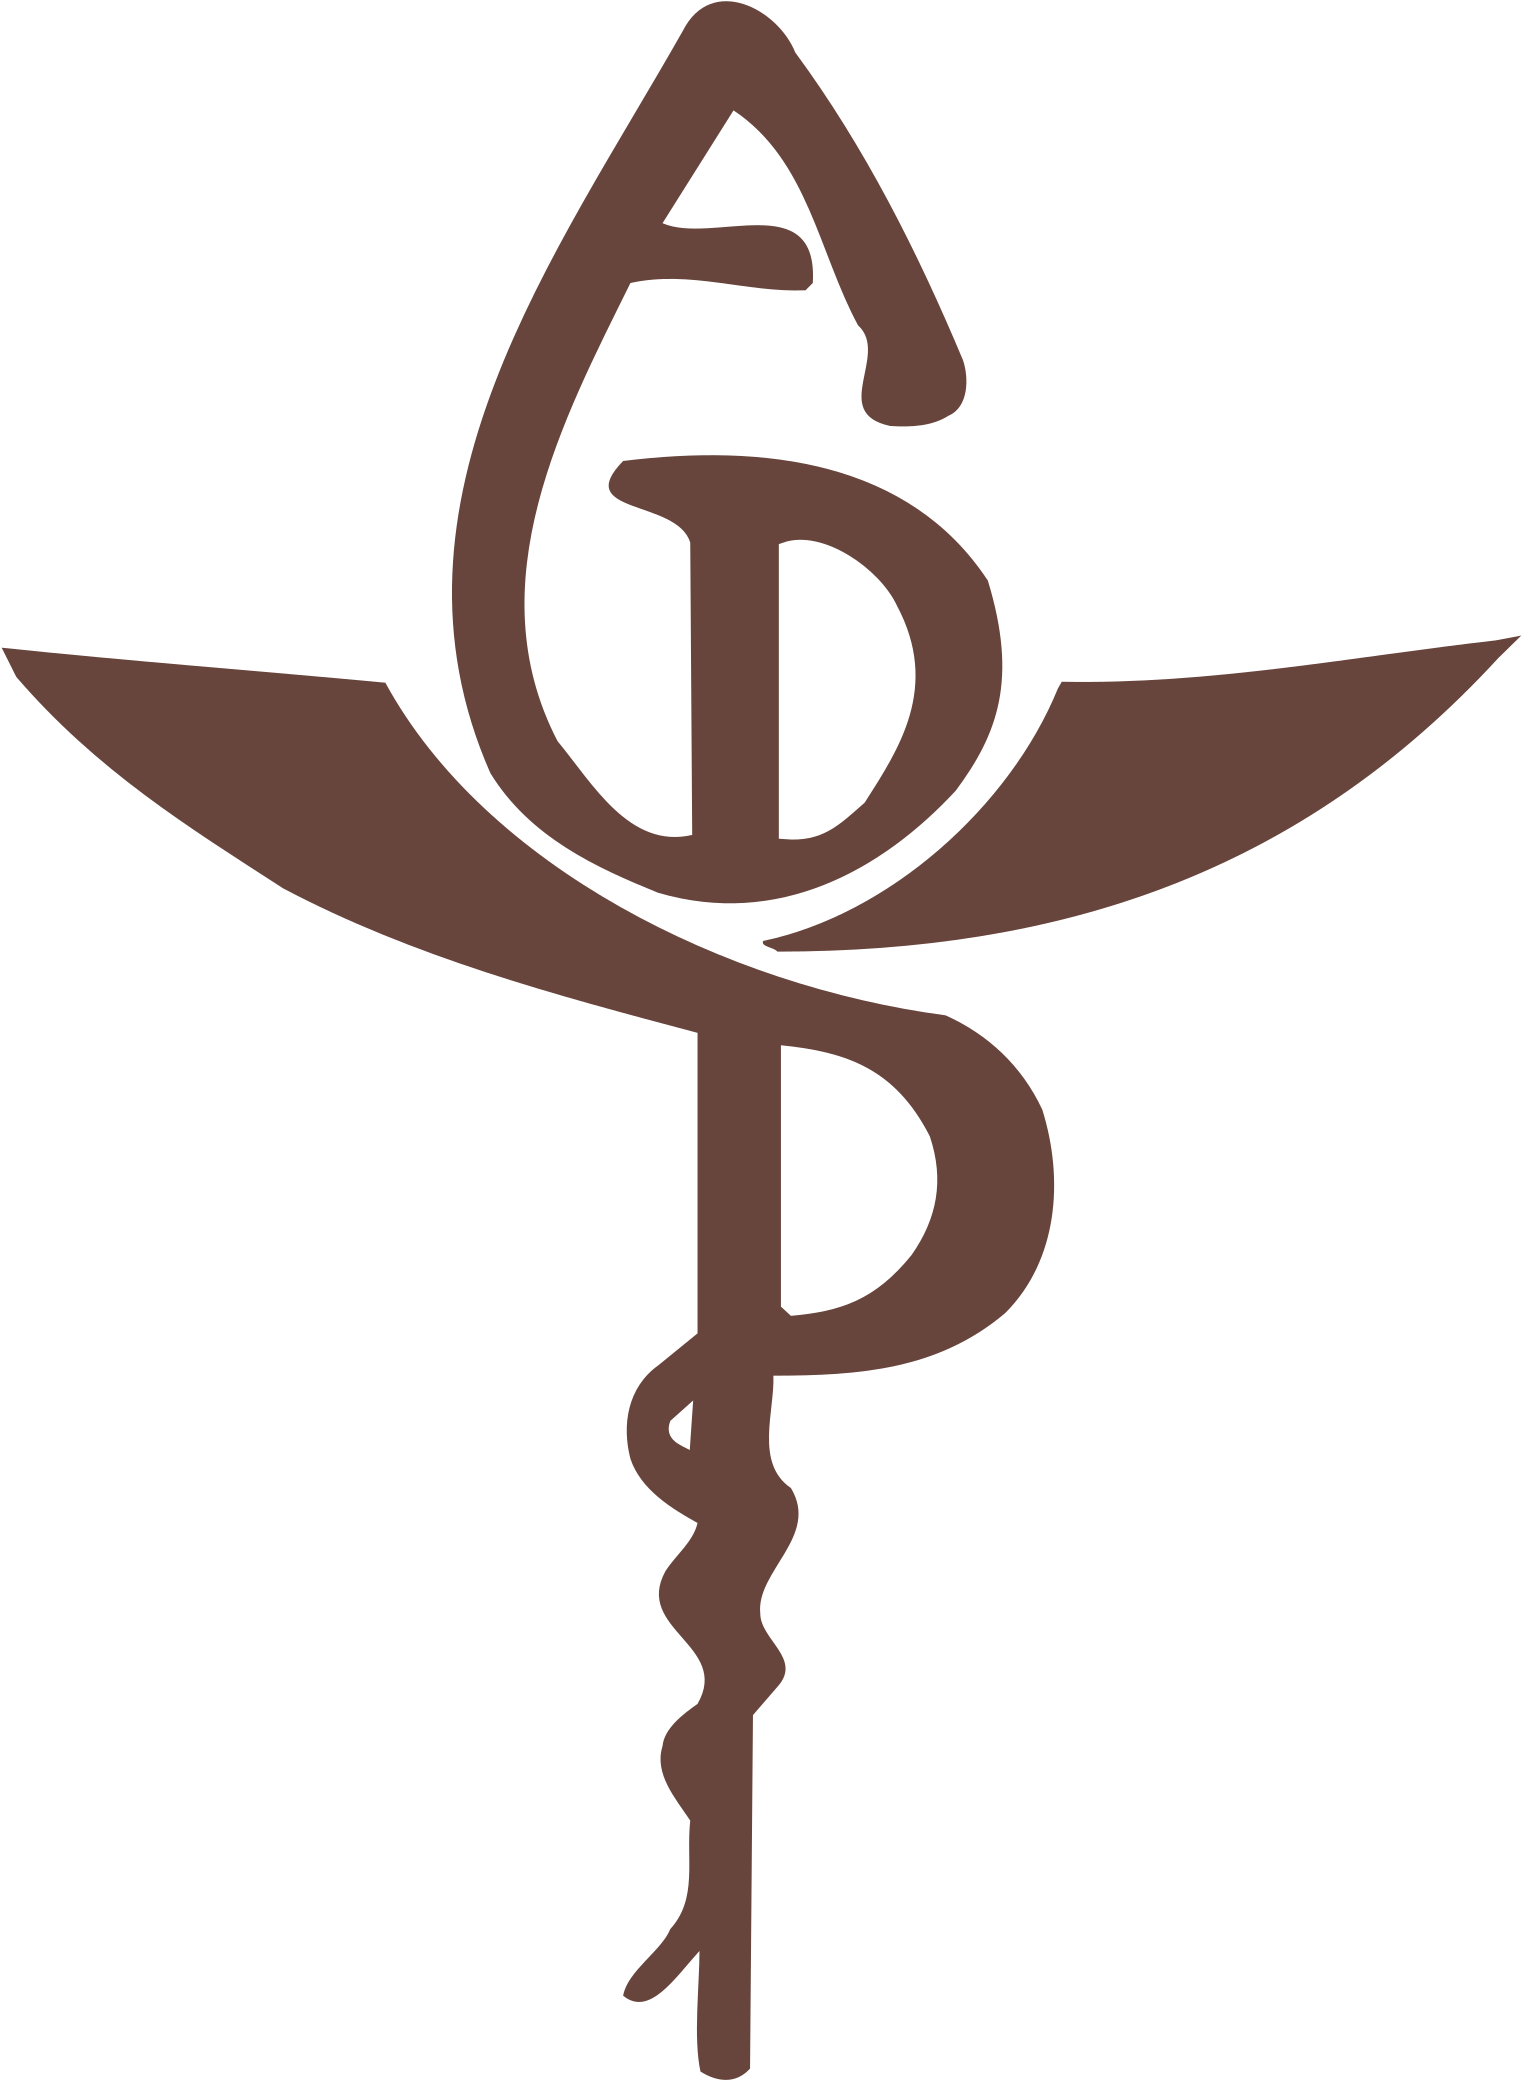 ADP Logo PNG Image